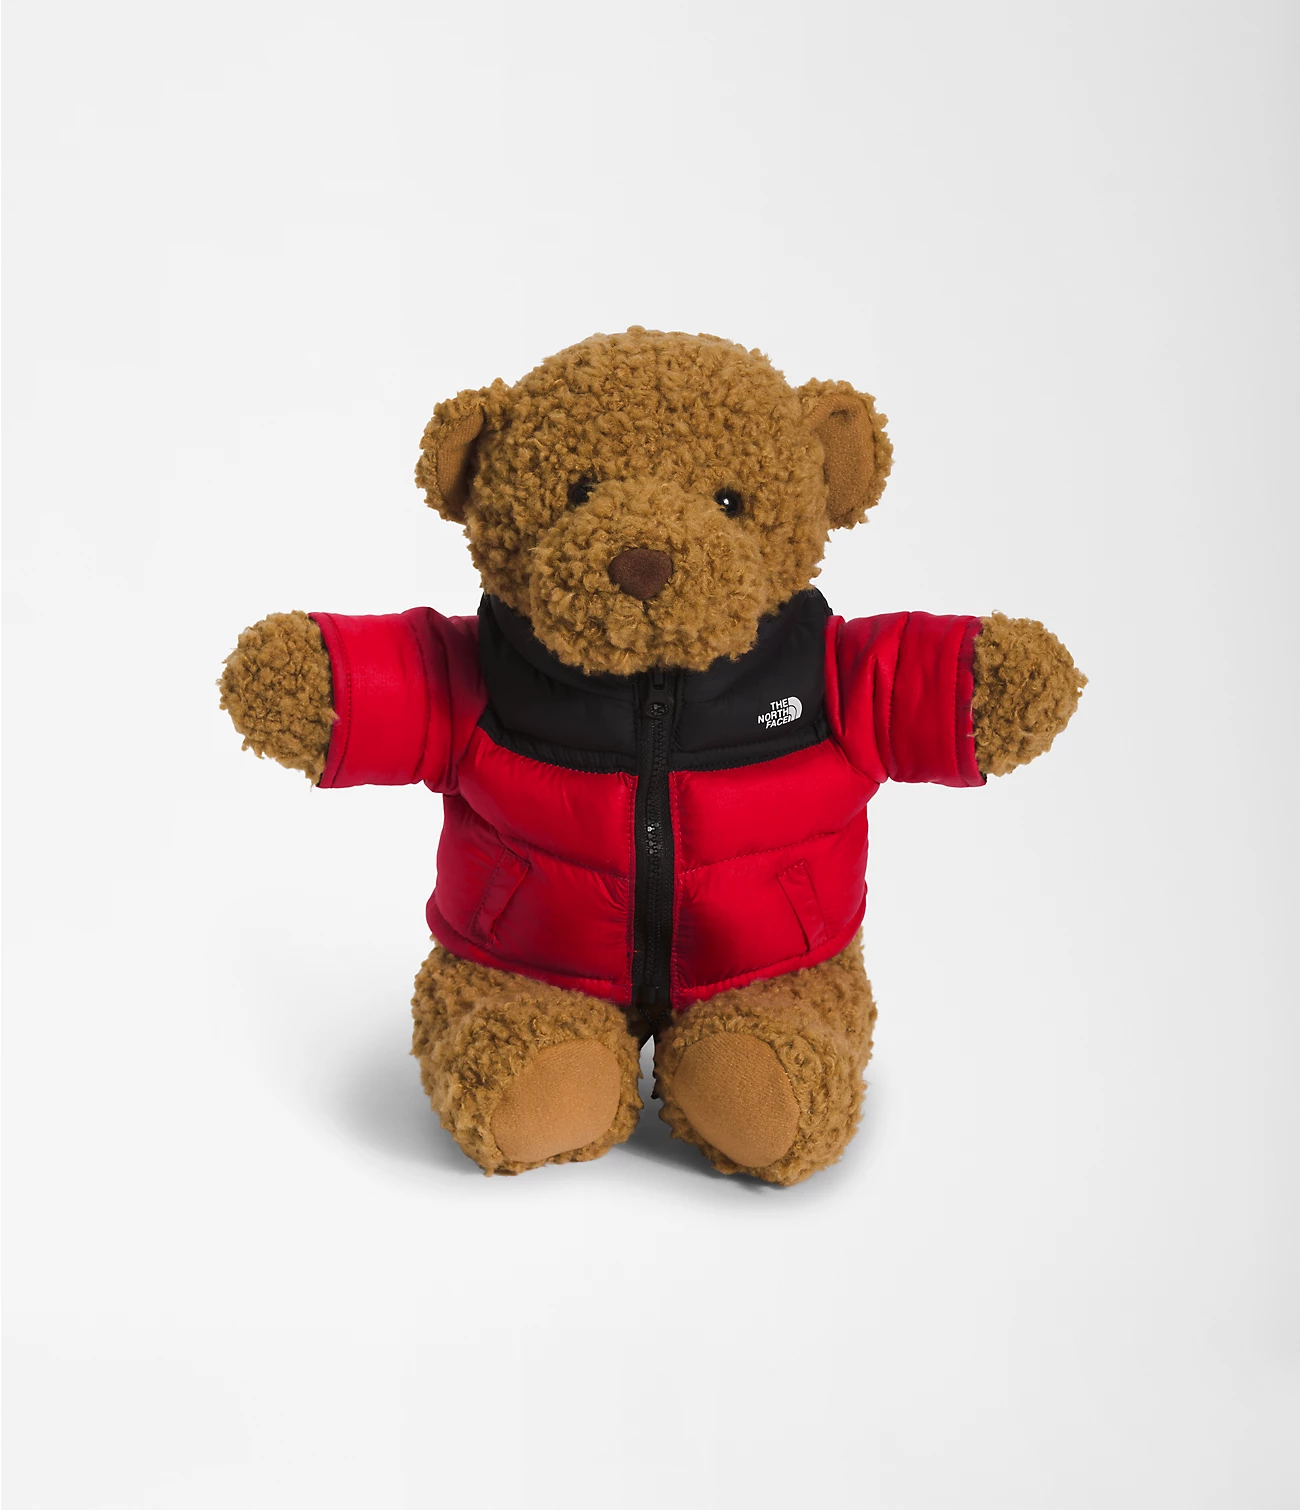 ノースフェイス ヌプシジャケットを着た熊のぬいぐるみが海外で発売 (THE NORTH FACE Nuptse Bear)